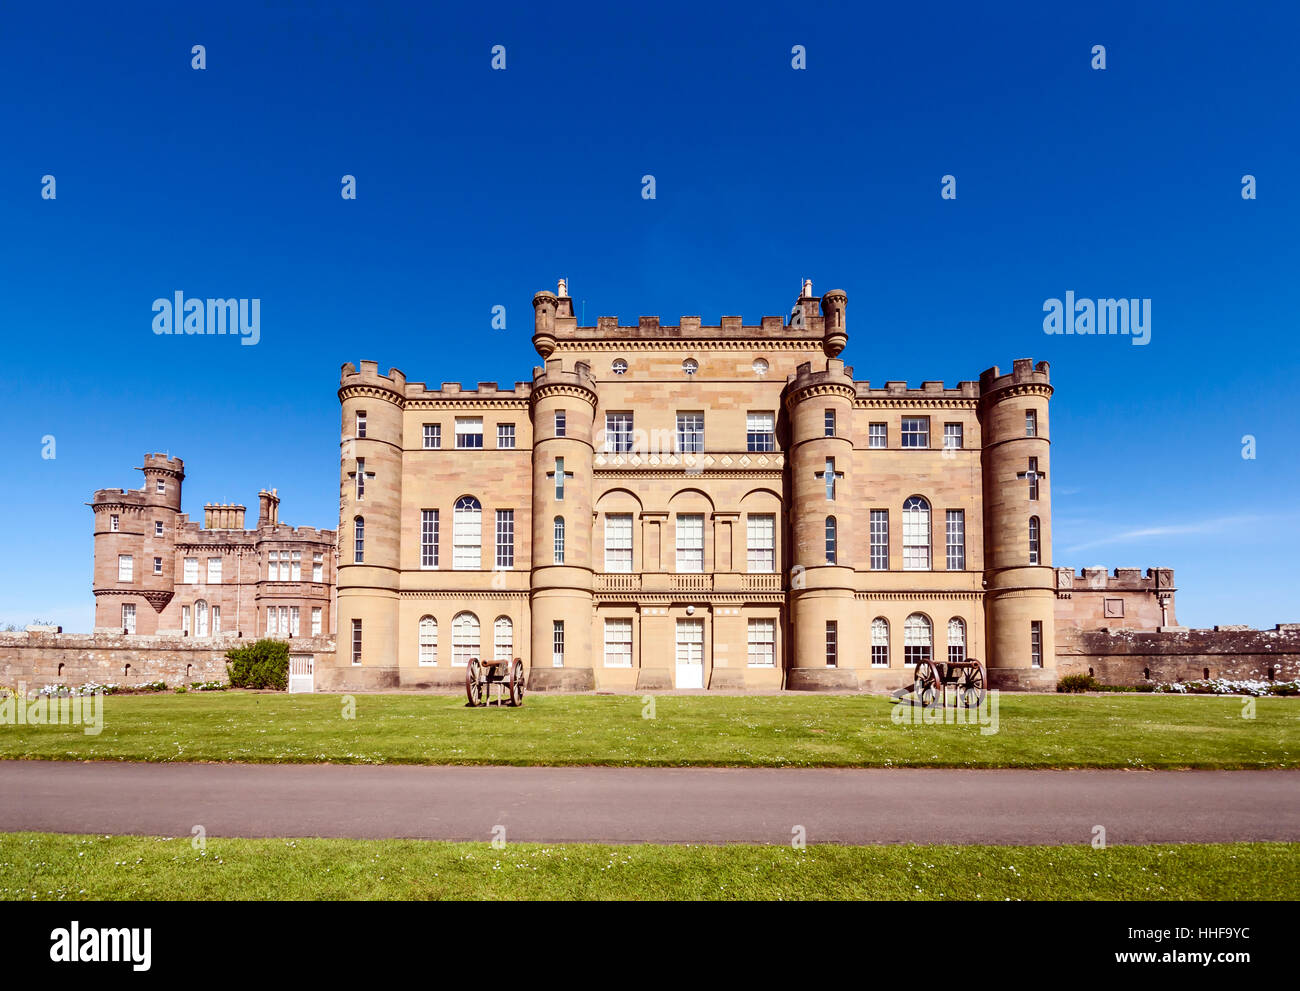 National Trust for Scotland besaß Culzean Castle befindet sich in der Nähe von Matratzen in Ayrshire, Schottland Stockfoto